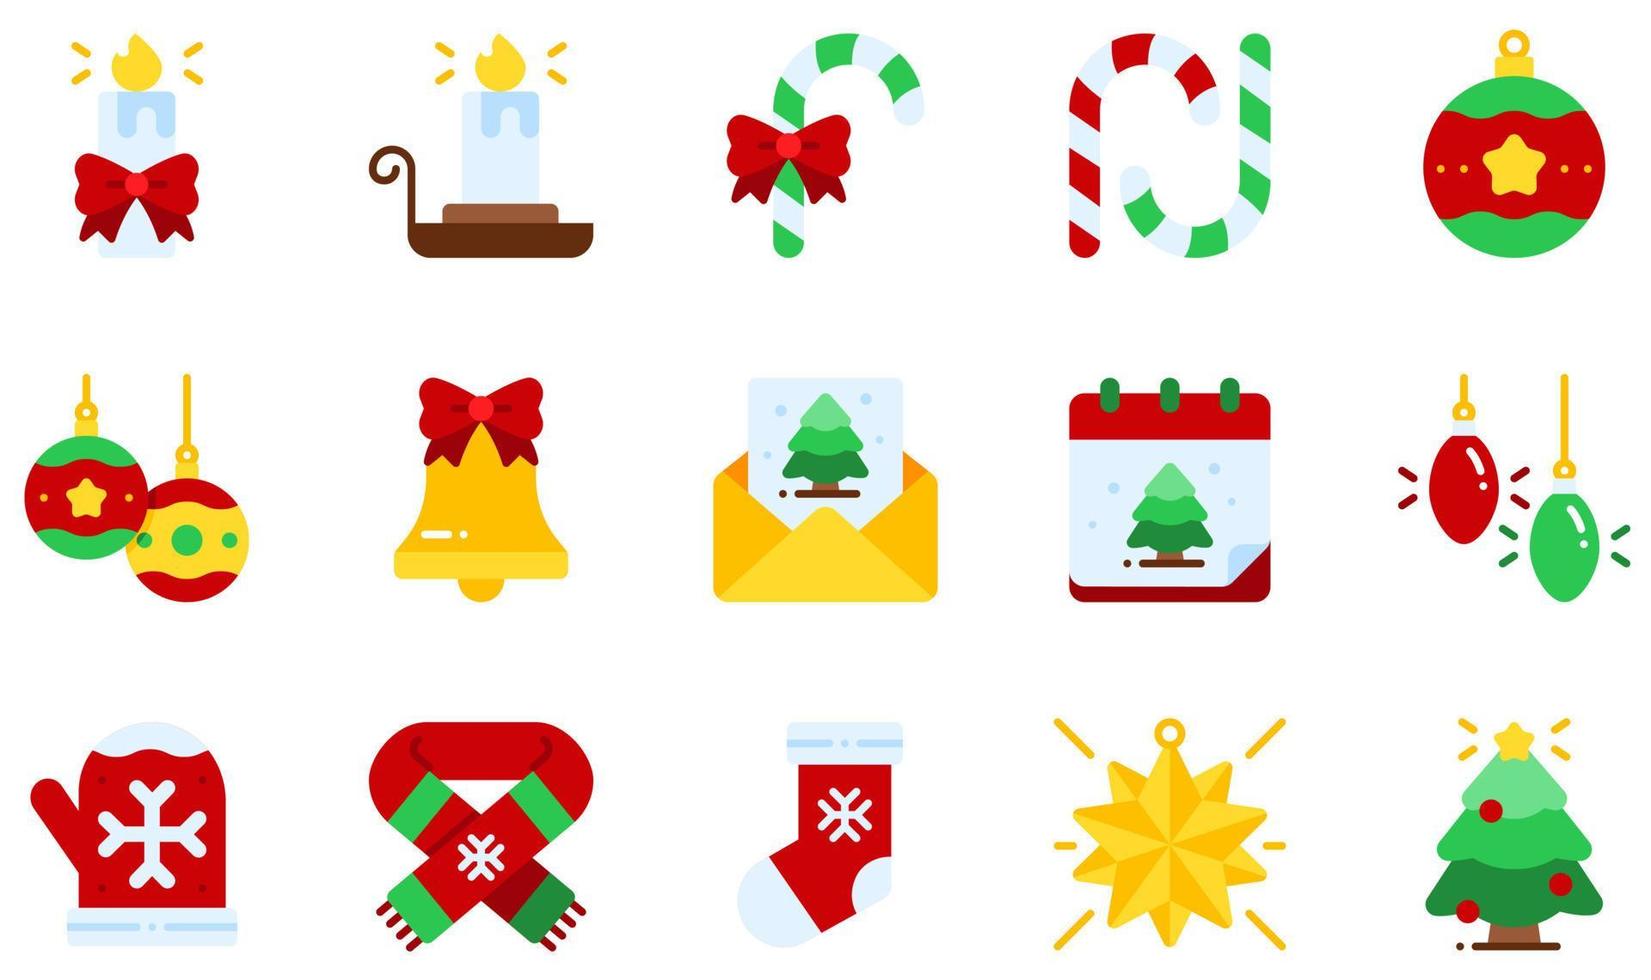 uppsättning vektor ikoner relaterade till juldekoration. innehåller sådana ikoner som ljus, ljusställ, godisrör, julklocka, julkort, julscarf och mer.